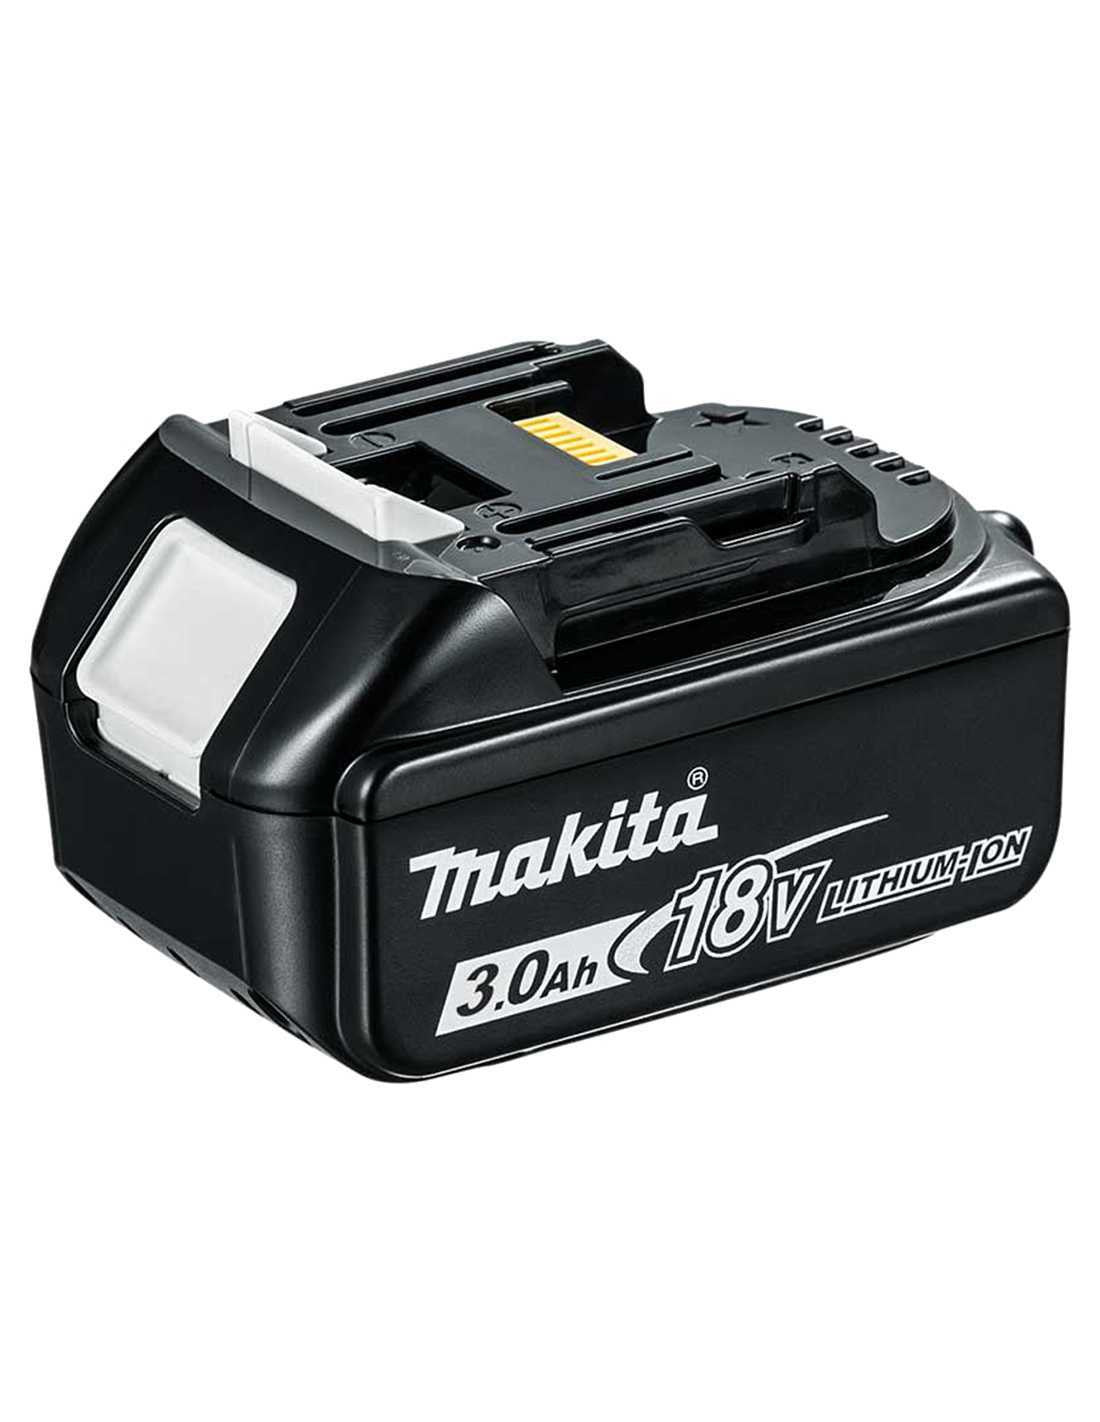 Makita Kit 7 tools + DC18RC Charger + 3bat 5Ah + 2 Bags LXT600 DLX7482BL3